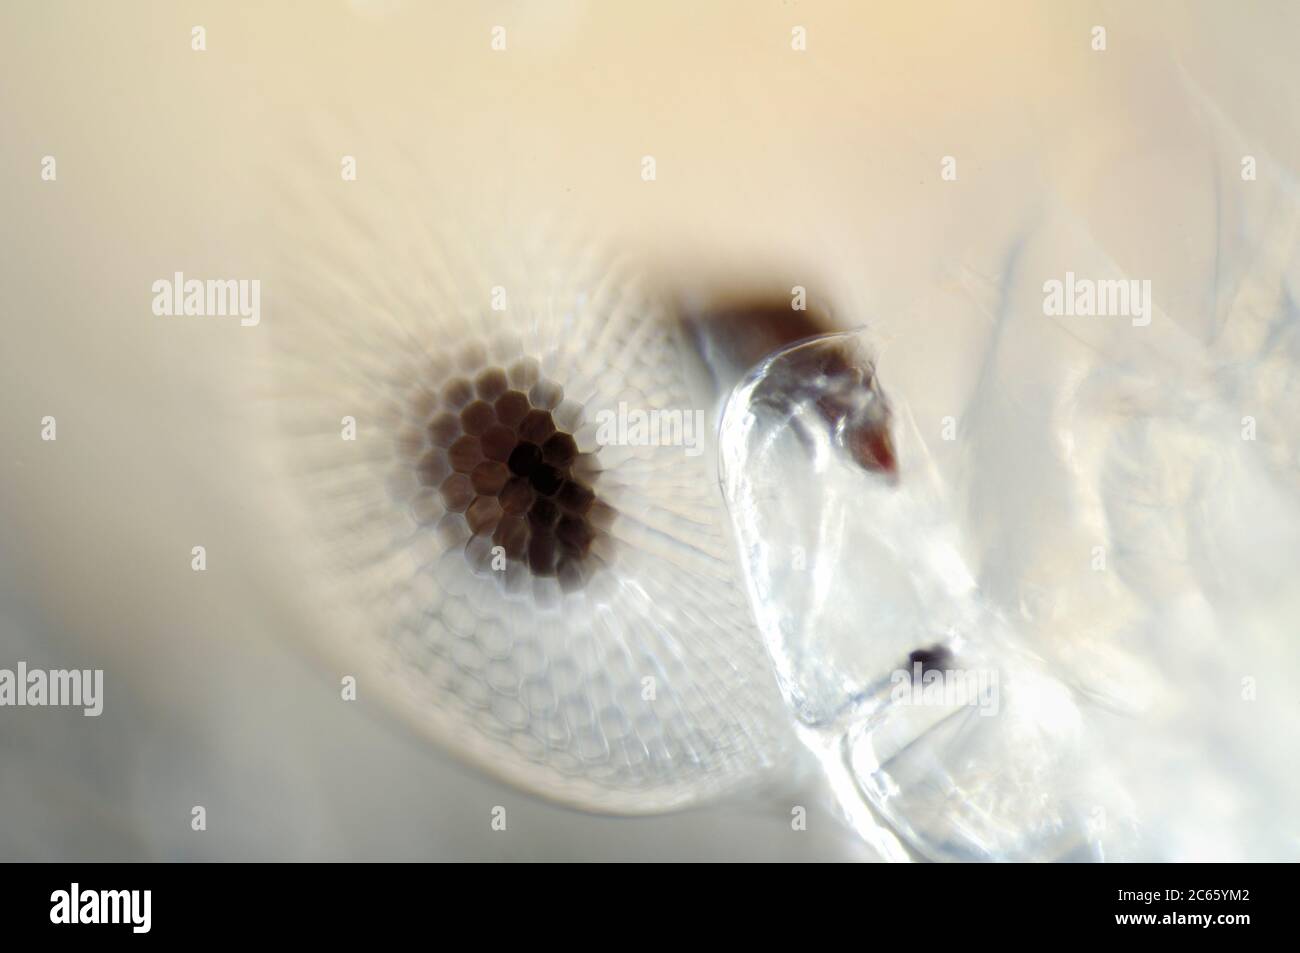 Plancton de Mar profundo, los ojos del adulto Phronima son una característica más de maravilla en un animal ya besado con hábitos y adaptaciones extraordinarios, Phronima sp. Foto de stock